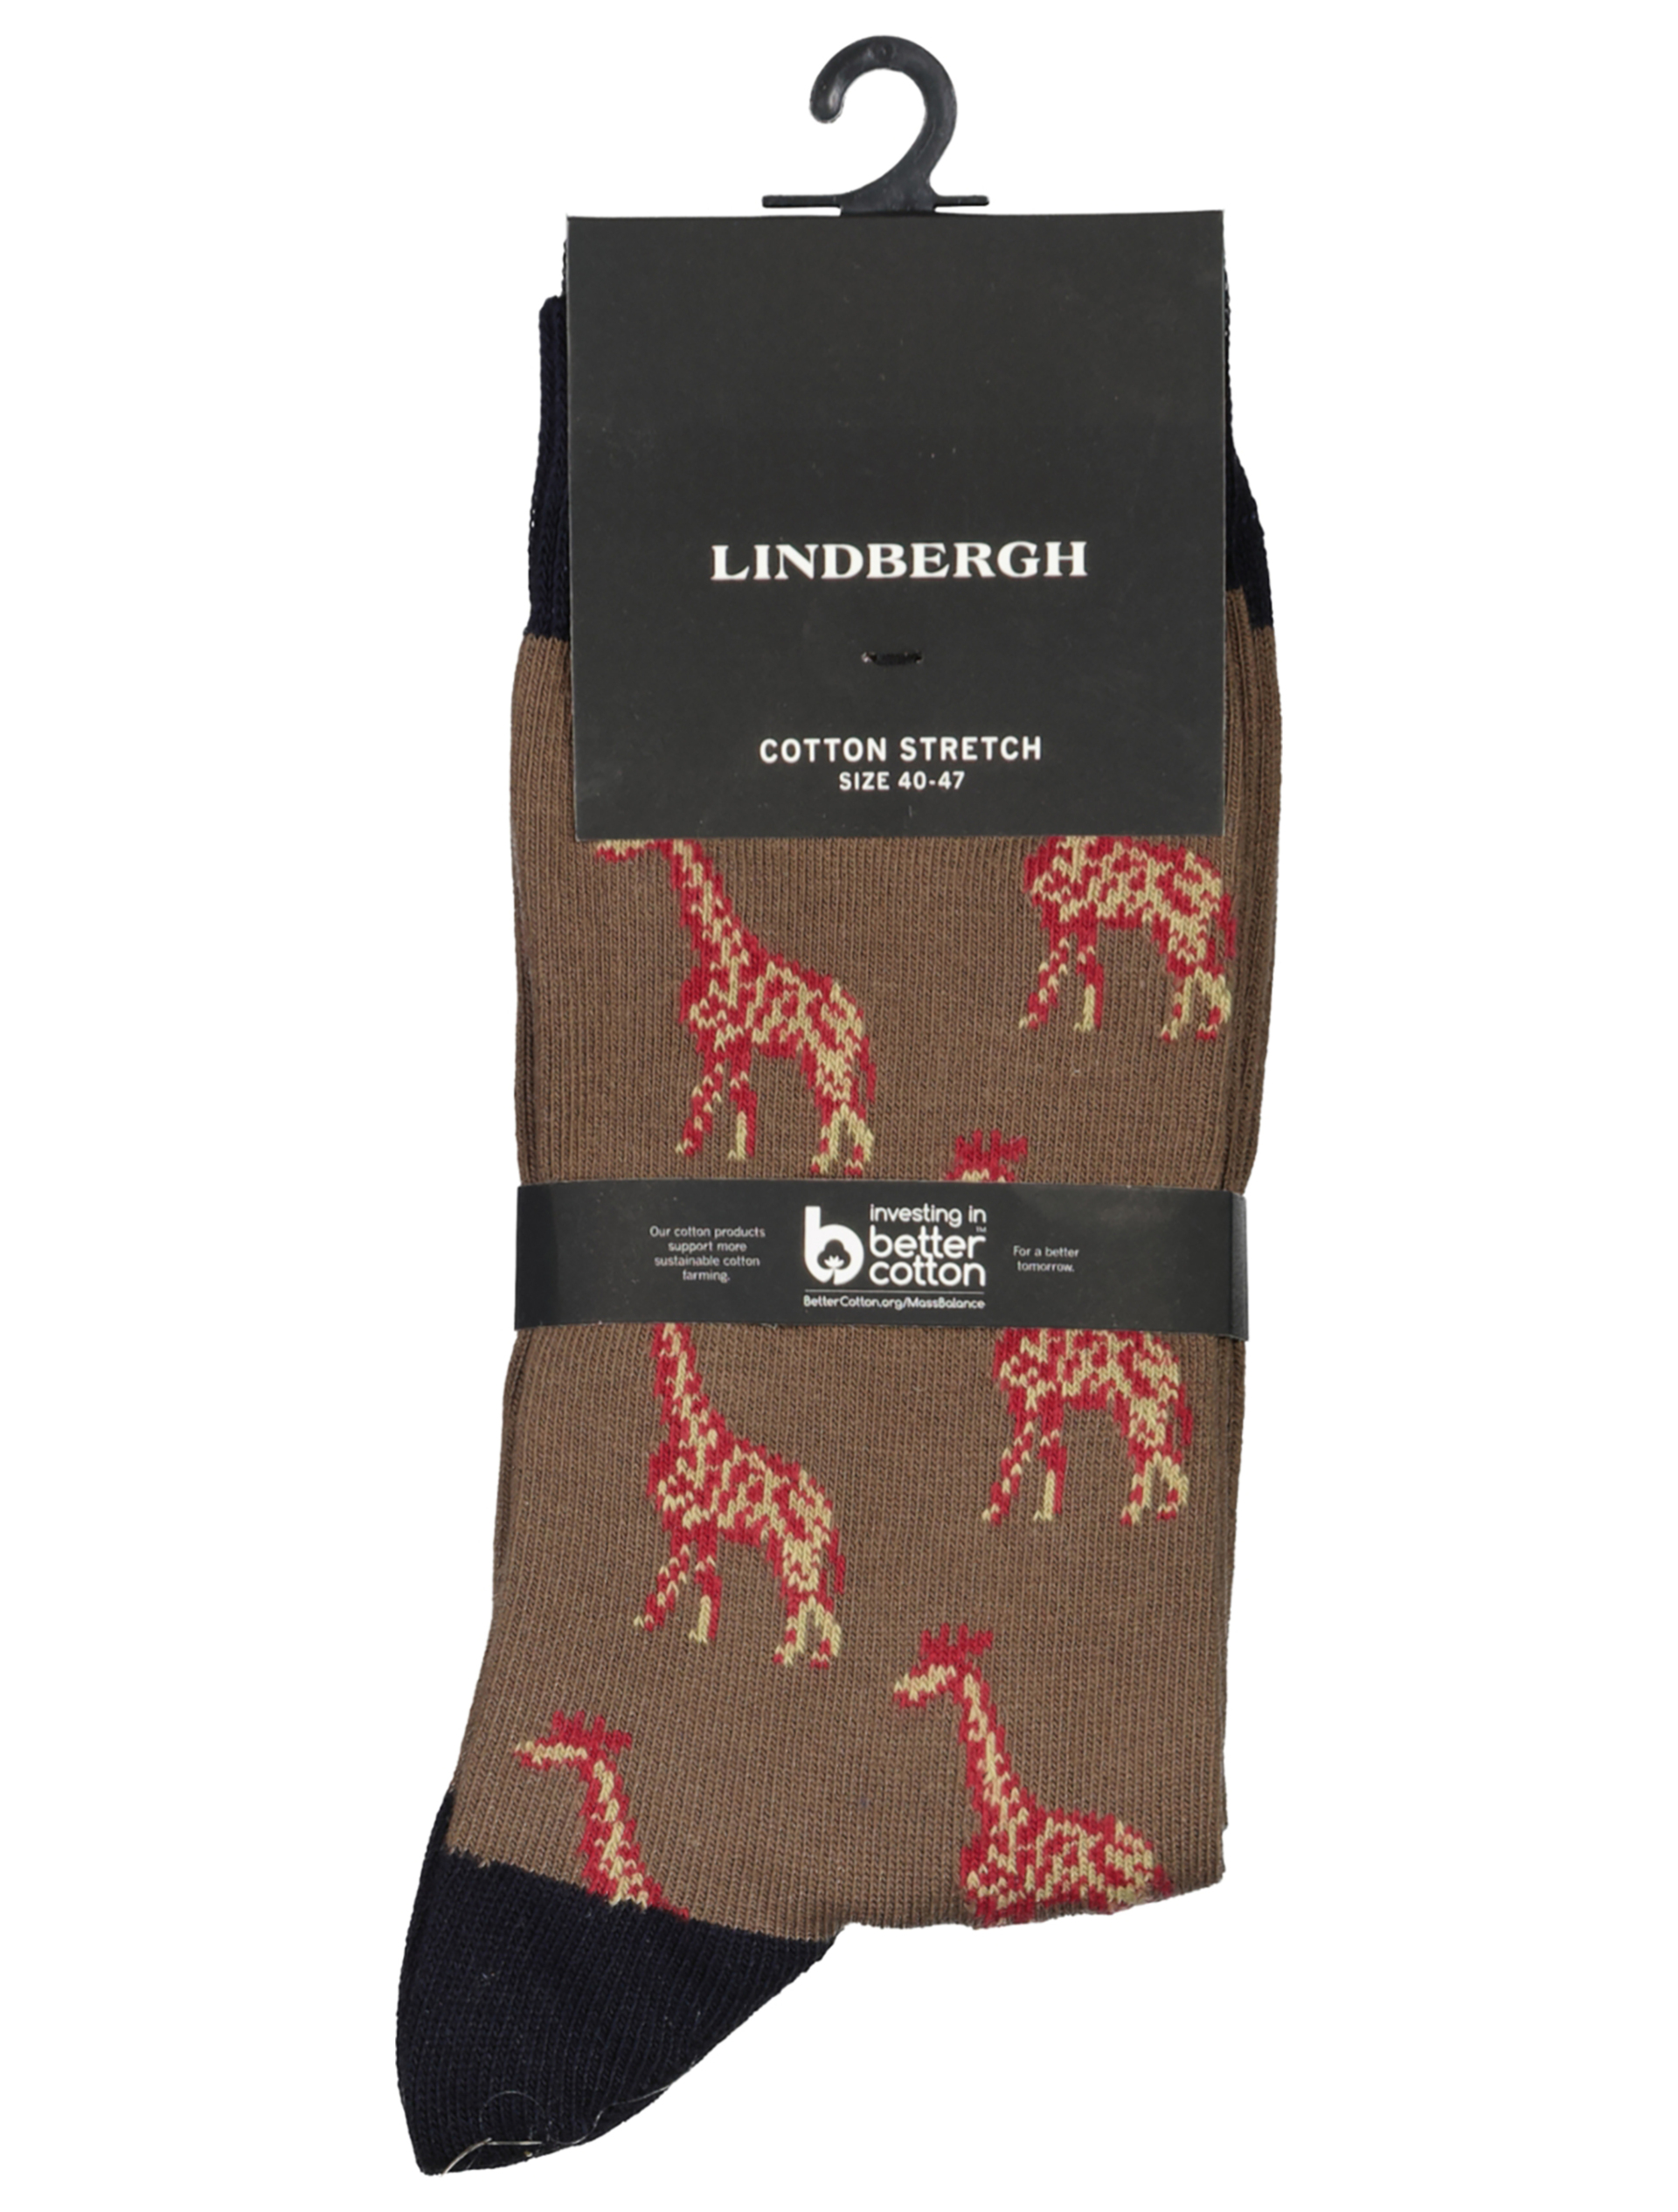 Lindbergh Socken grau / dk stone